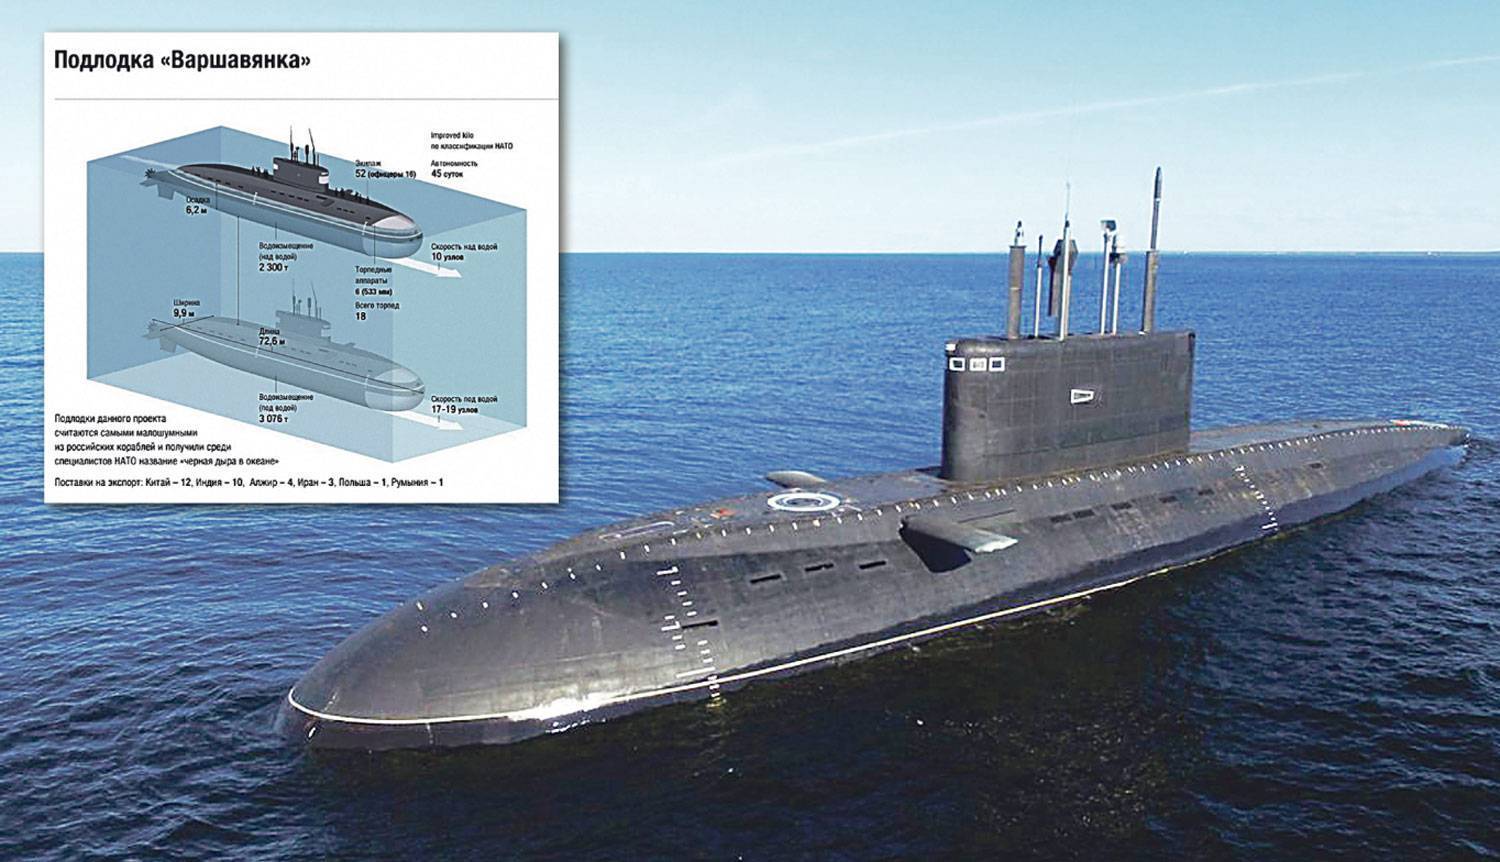 Подводные лодки проекта 636 «варшавянка» — википедия переиздание // wiki 2